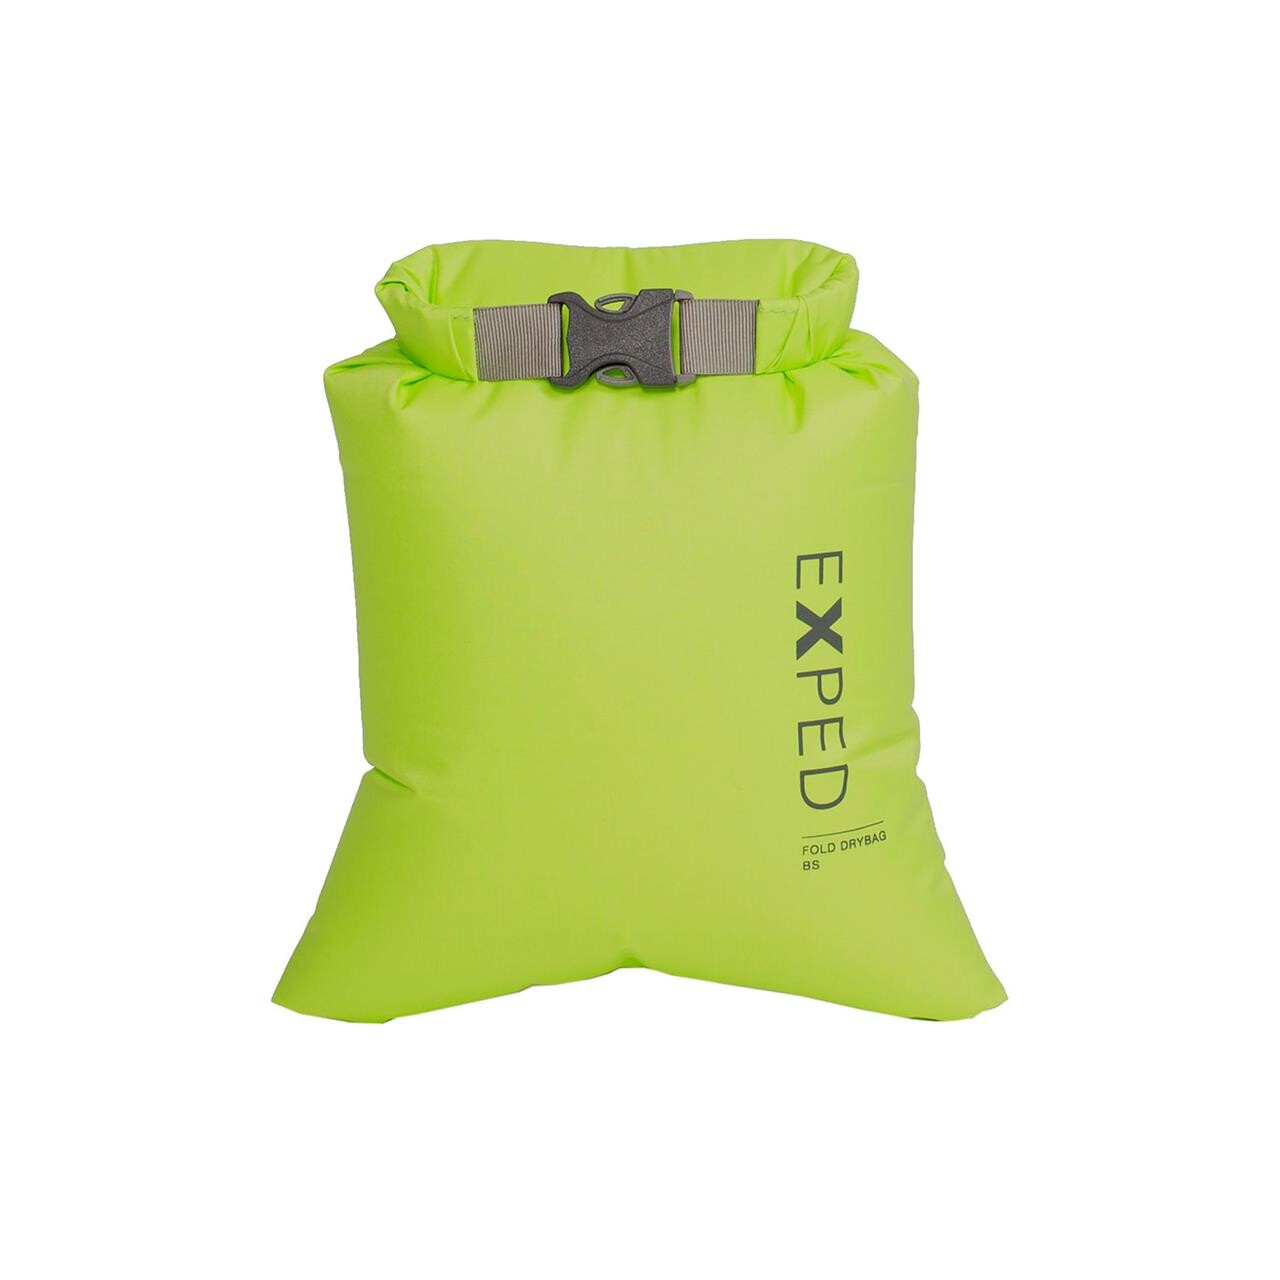 Billede af Exped Fold Drybag BS XXS (Grøn (LIME)) hos Friluftsland.dk